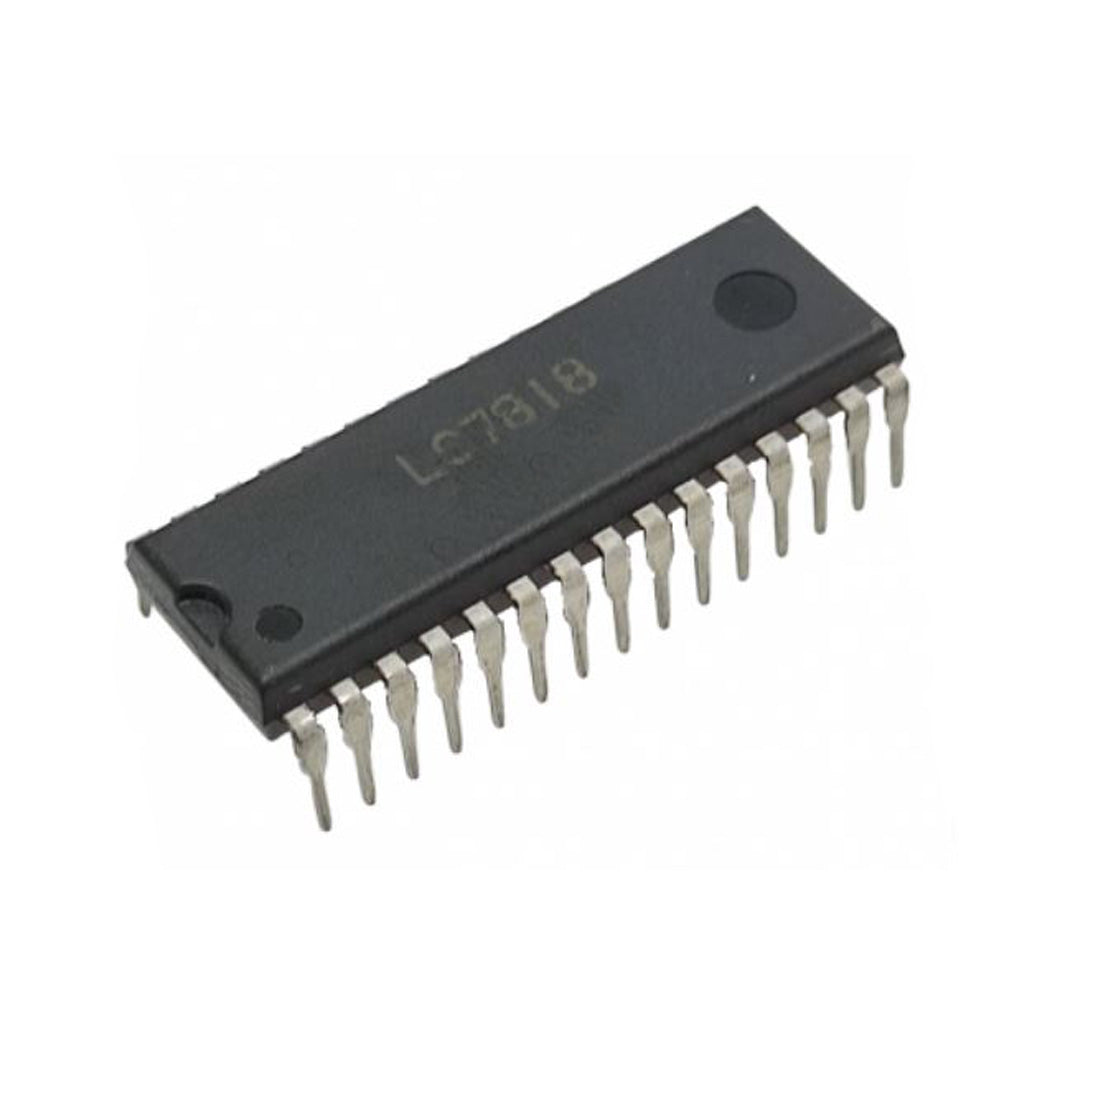 LC7818 Componente elettronica, circuito integrato, transistor, 30 contatti